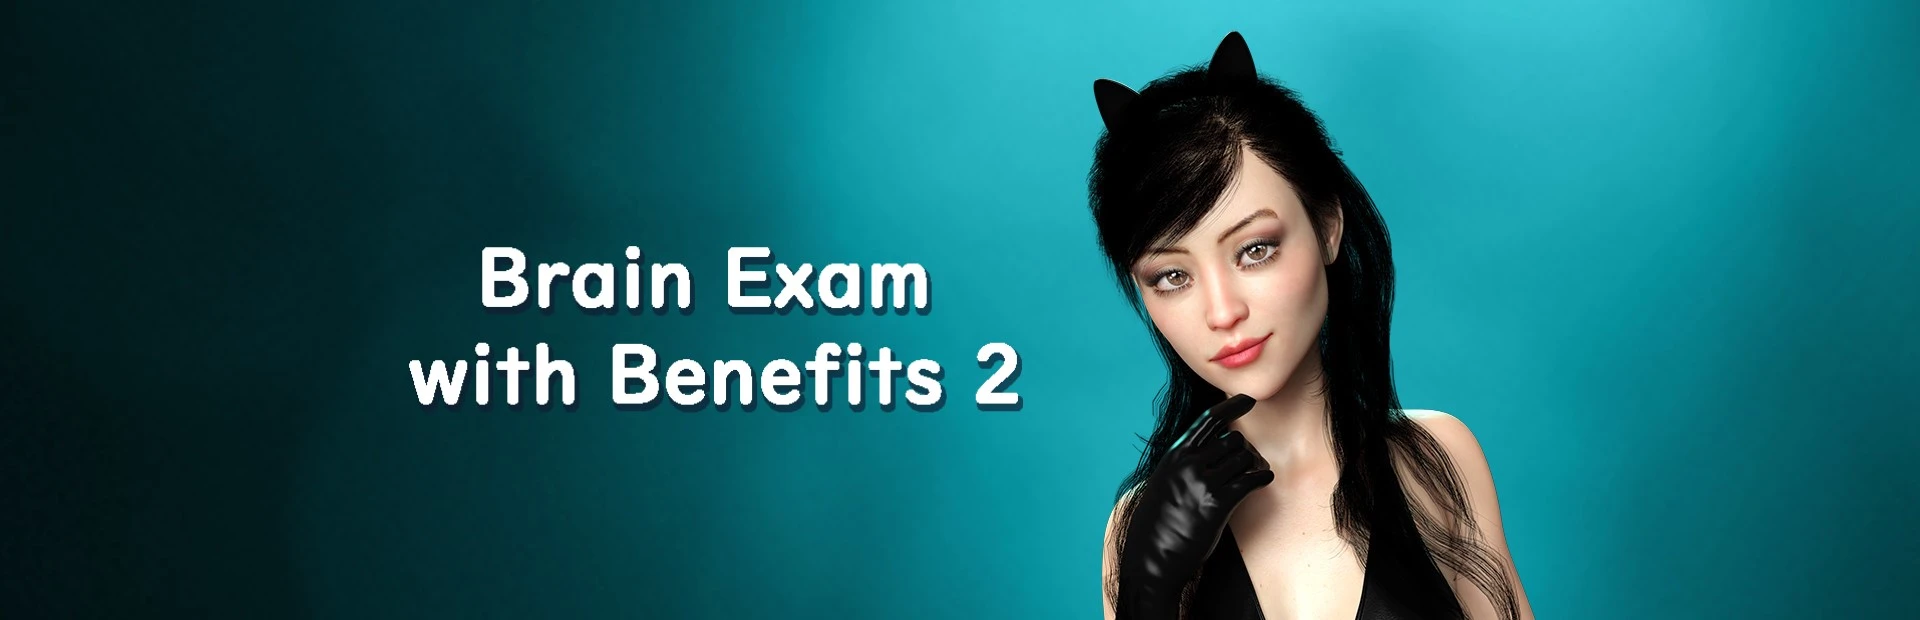 Brain Exam with Benefits 2 main image